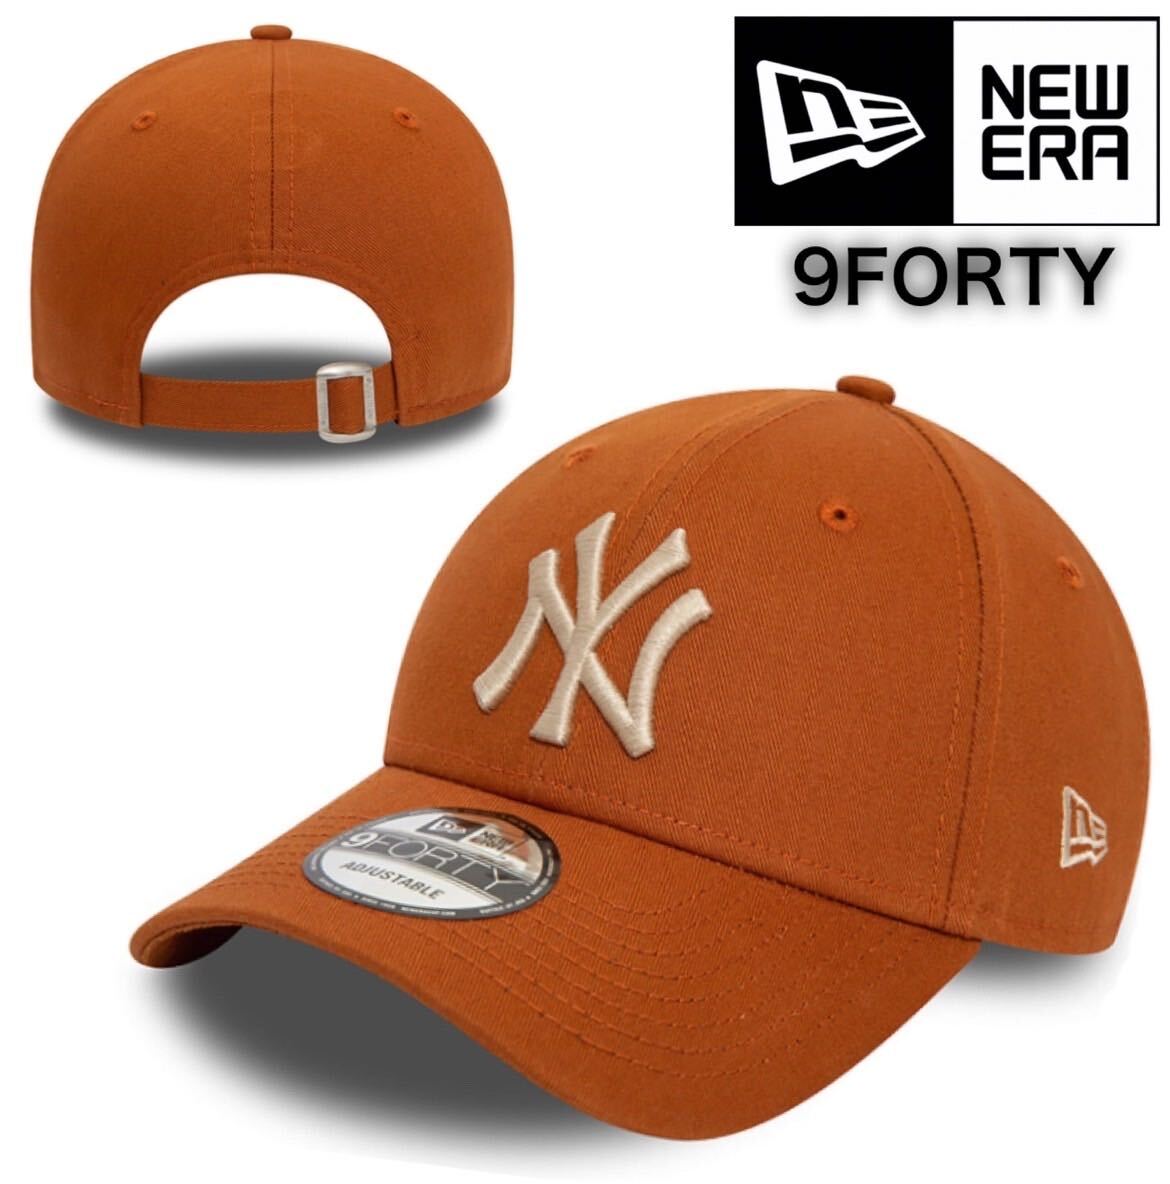 ニューエラ キャップ 帽子 9FORTY 940 コットン素材 ヤンキース キャロットブラウン バックル仕様 NEWERA 9FORTY LEAGUE BASIC CAP 新品